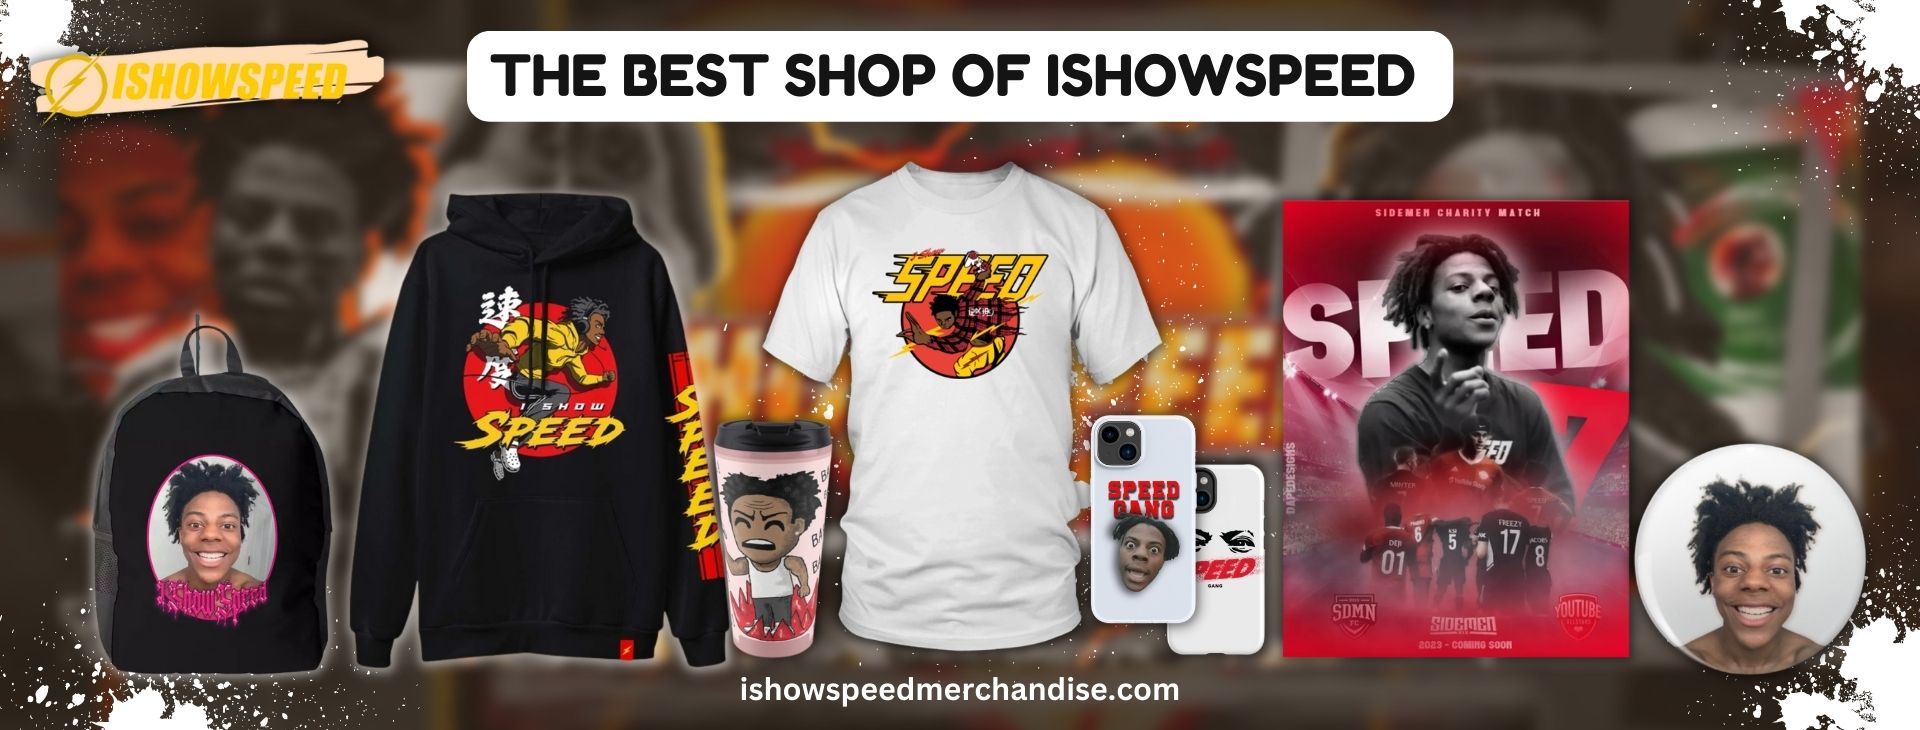 ishowspeed Store Banner - Ishowspeed Merch